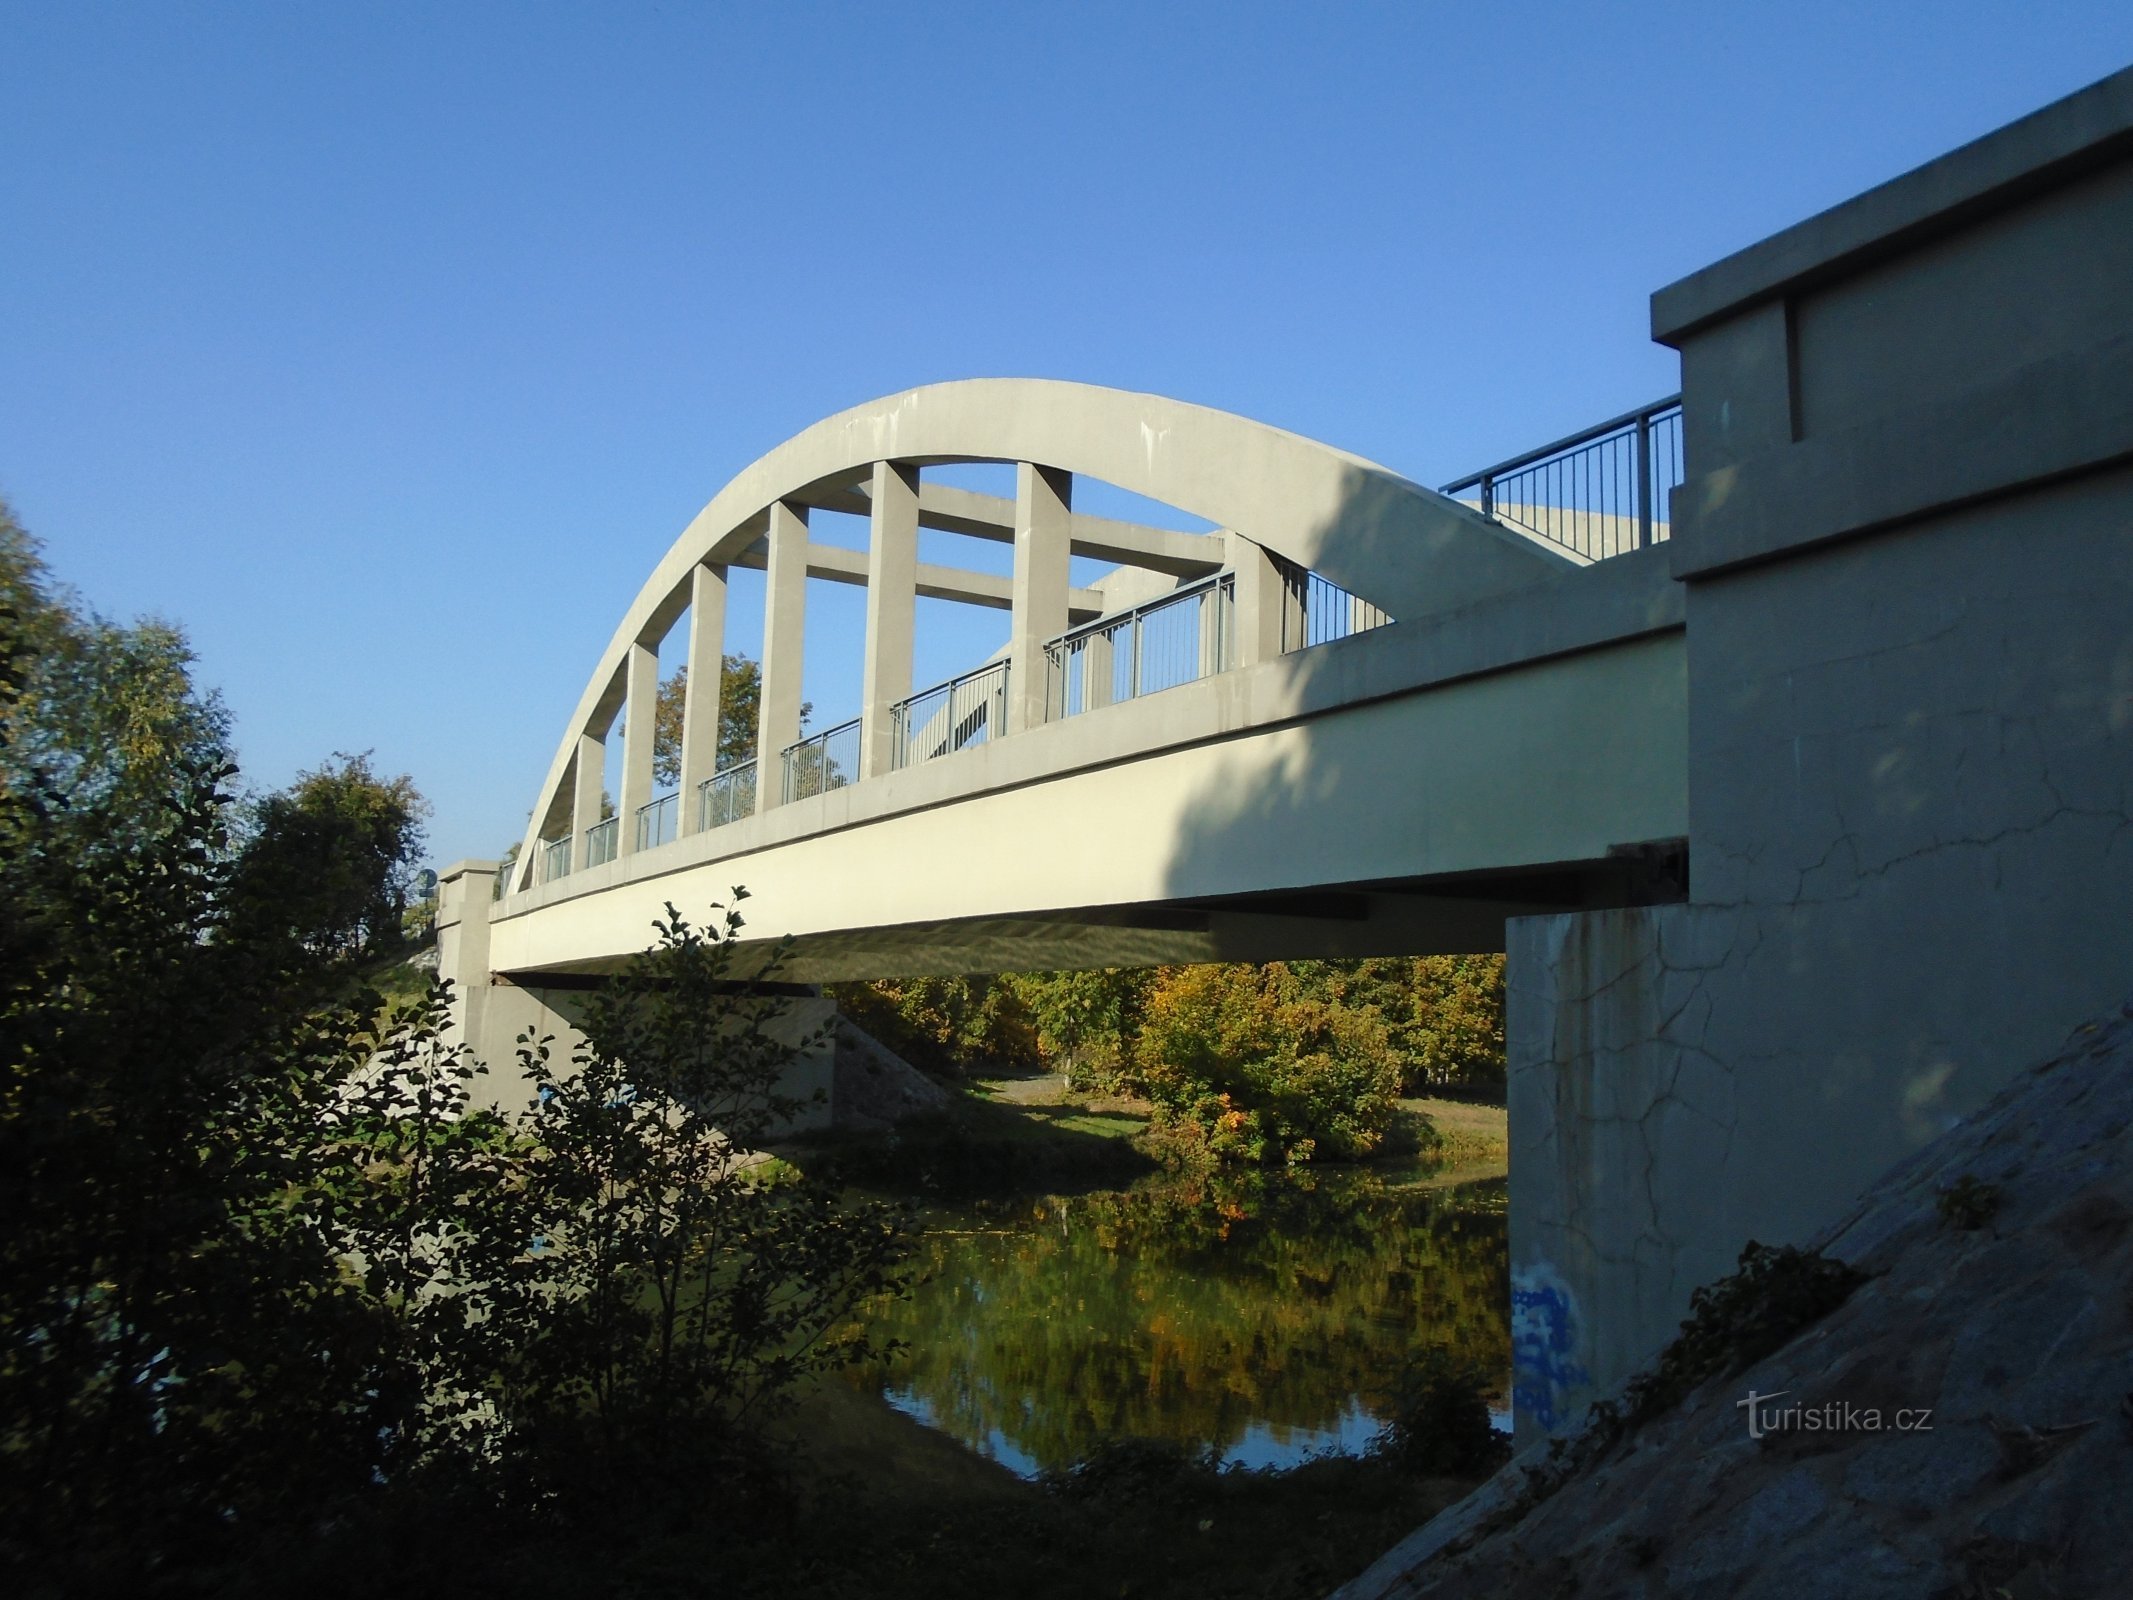 Cầu qua sông Elbe (Černožice, 10.10.2018/XNUMX/XNUMX)